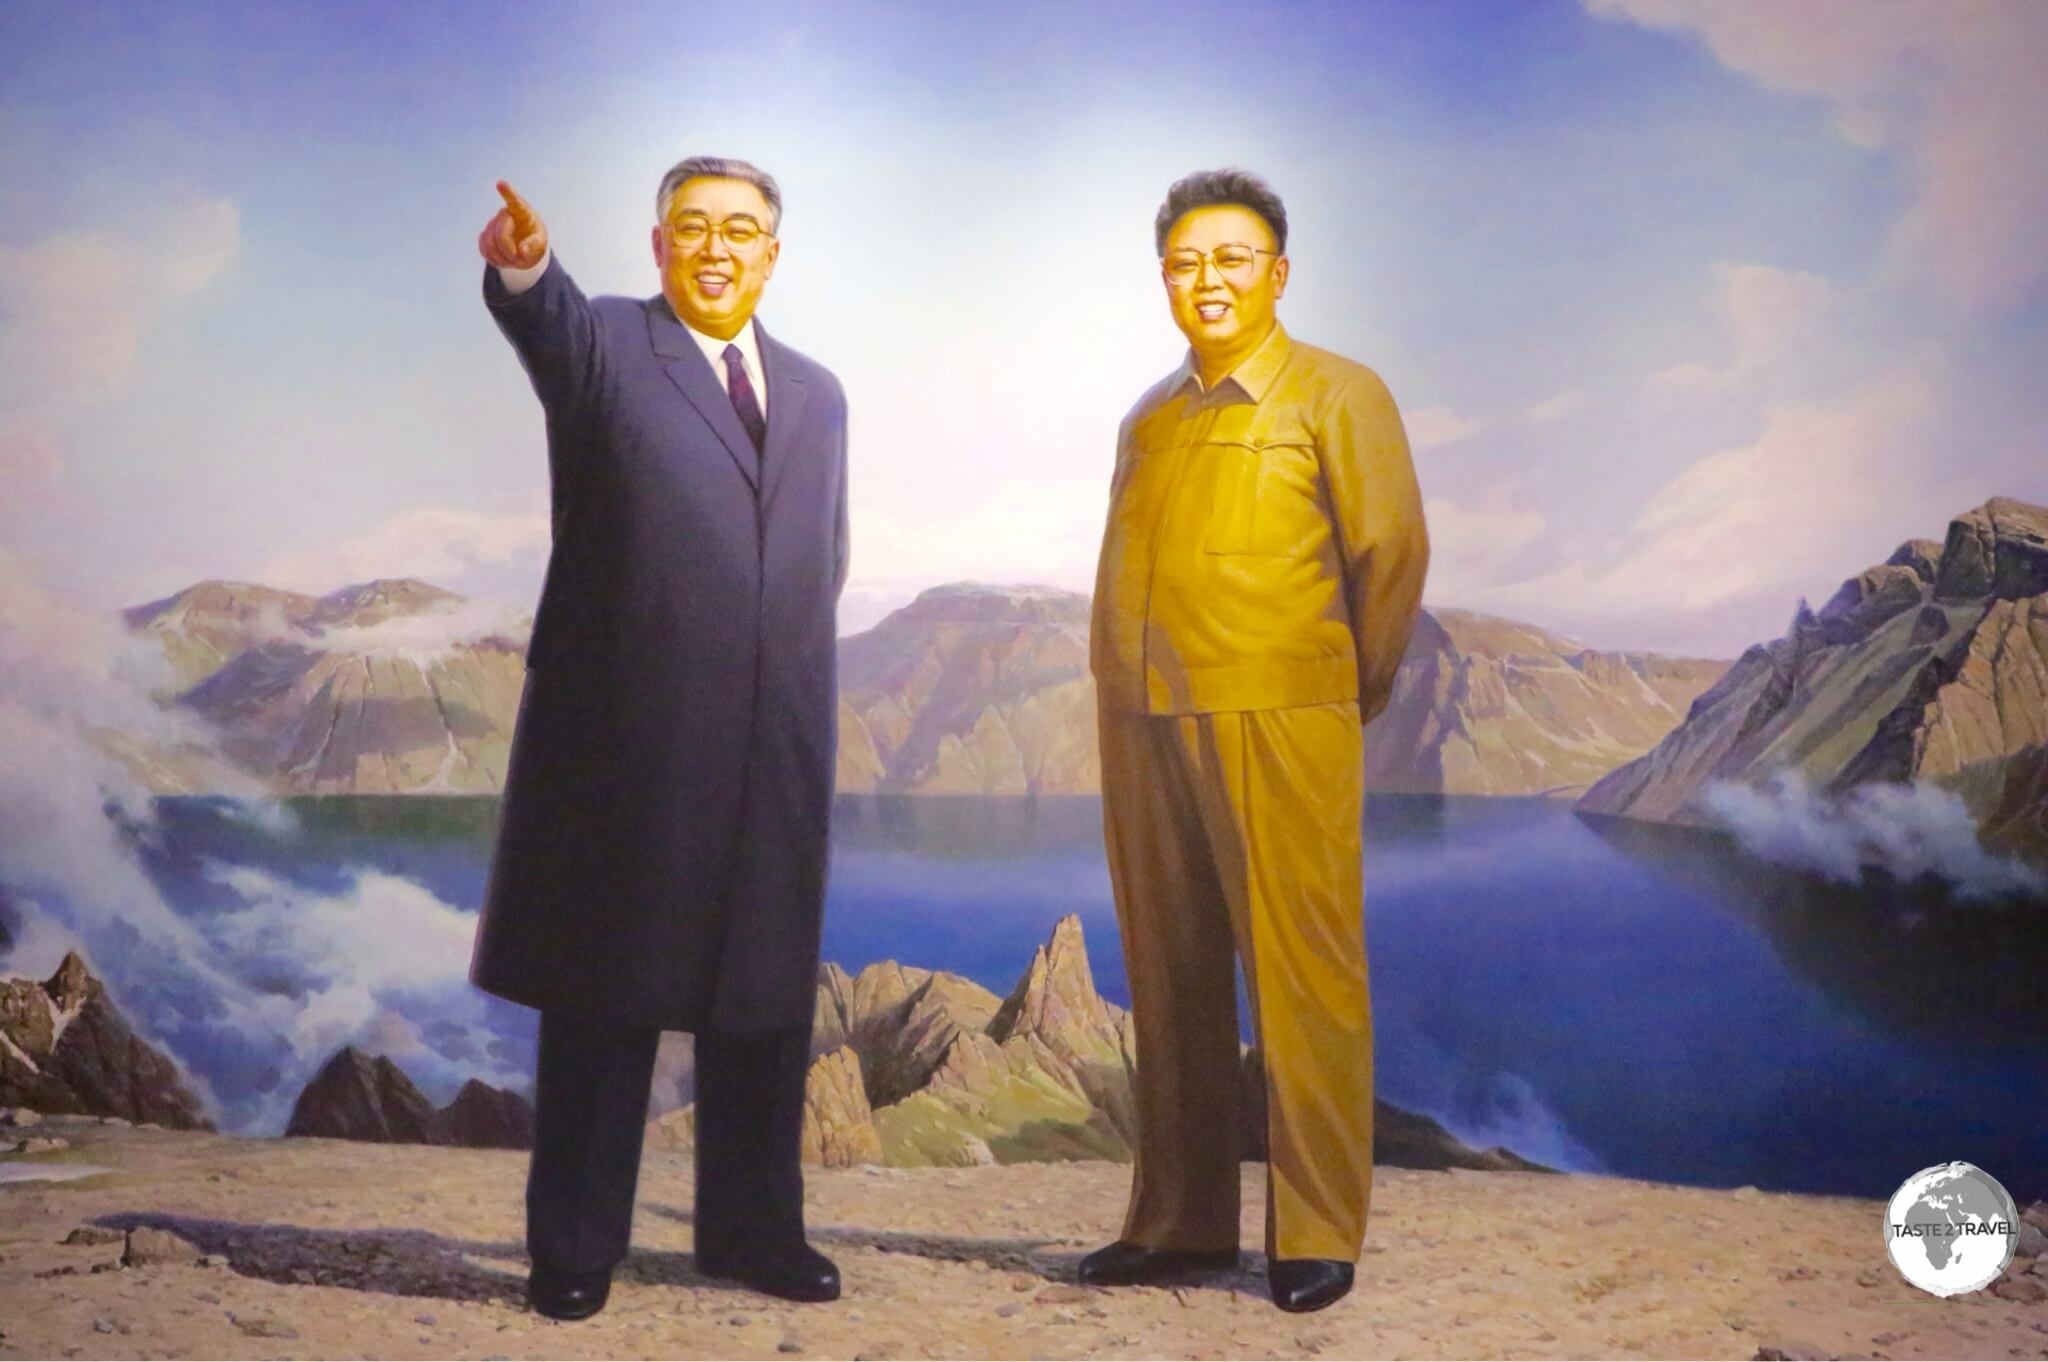 North Korea Photo Gallery - taste2travel - North Korea Revealed!